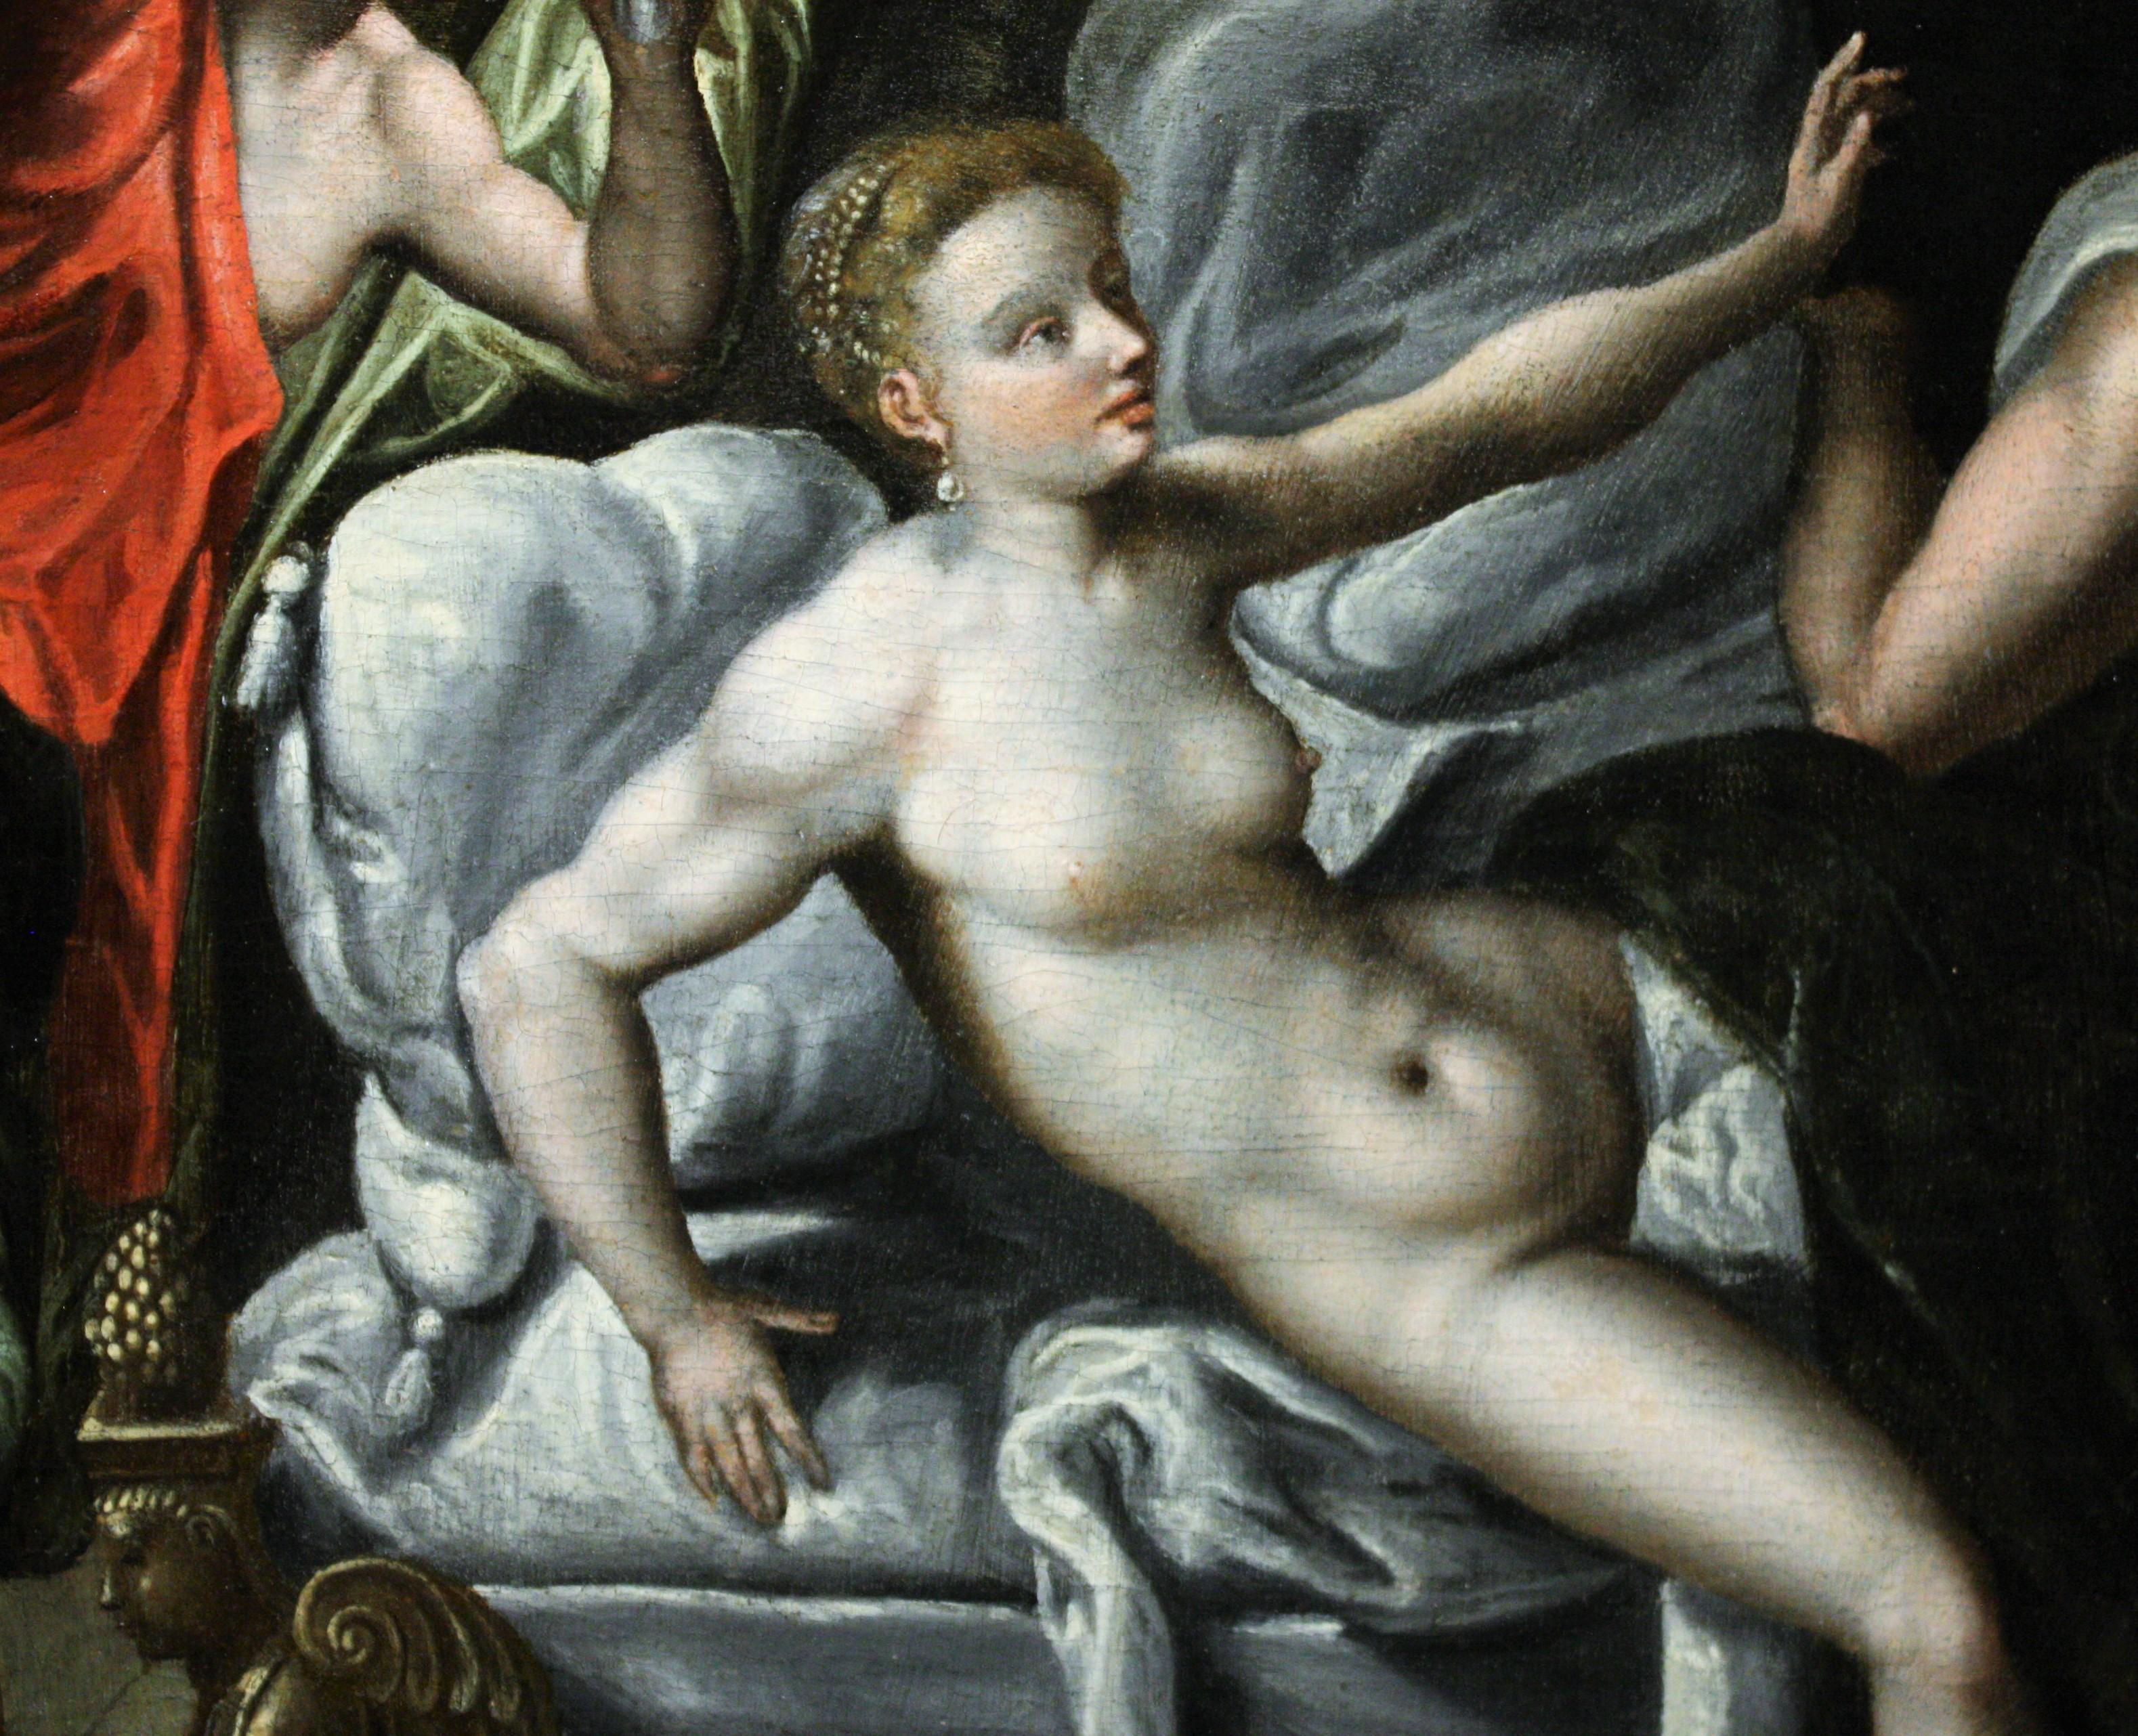 Venus und Mars überrascht von Vulkan, um 1580, Kreis von Jacob de Backer ( Antwerpen, 1545 - 1585)
Das Thema unserer Arbeit stammt aus den Metamorphosen von Ovid, in denen der Autor die Geschichte der Liebe der Götter des Olymps erzählt. Mehrere